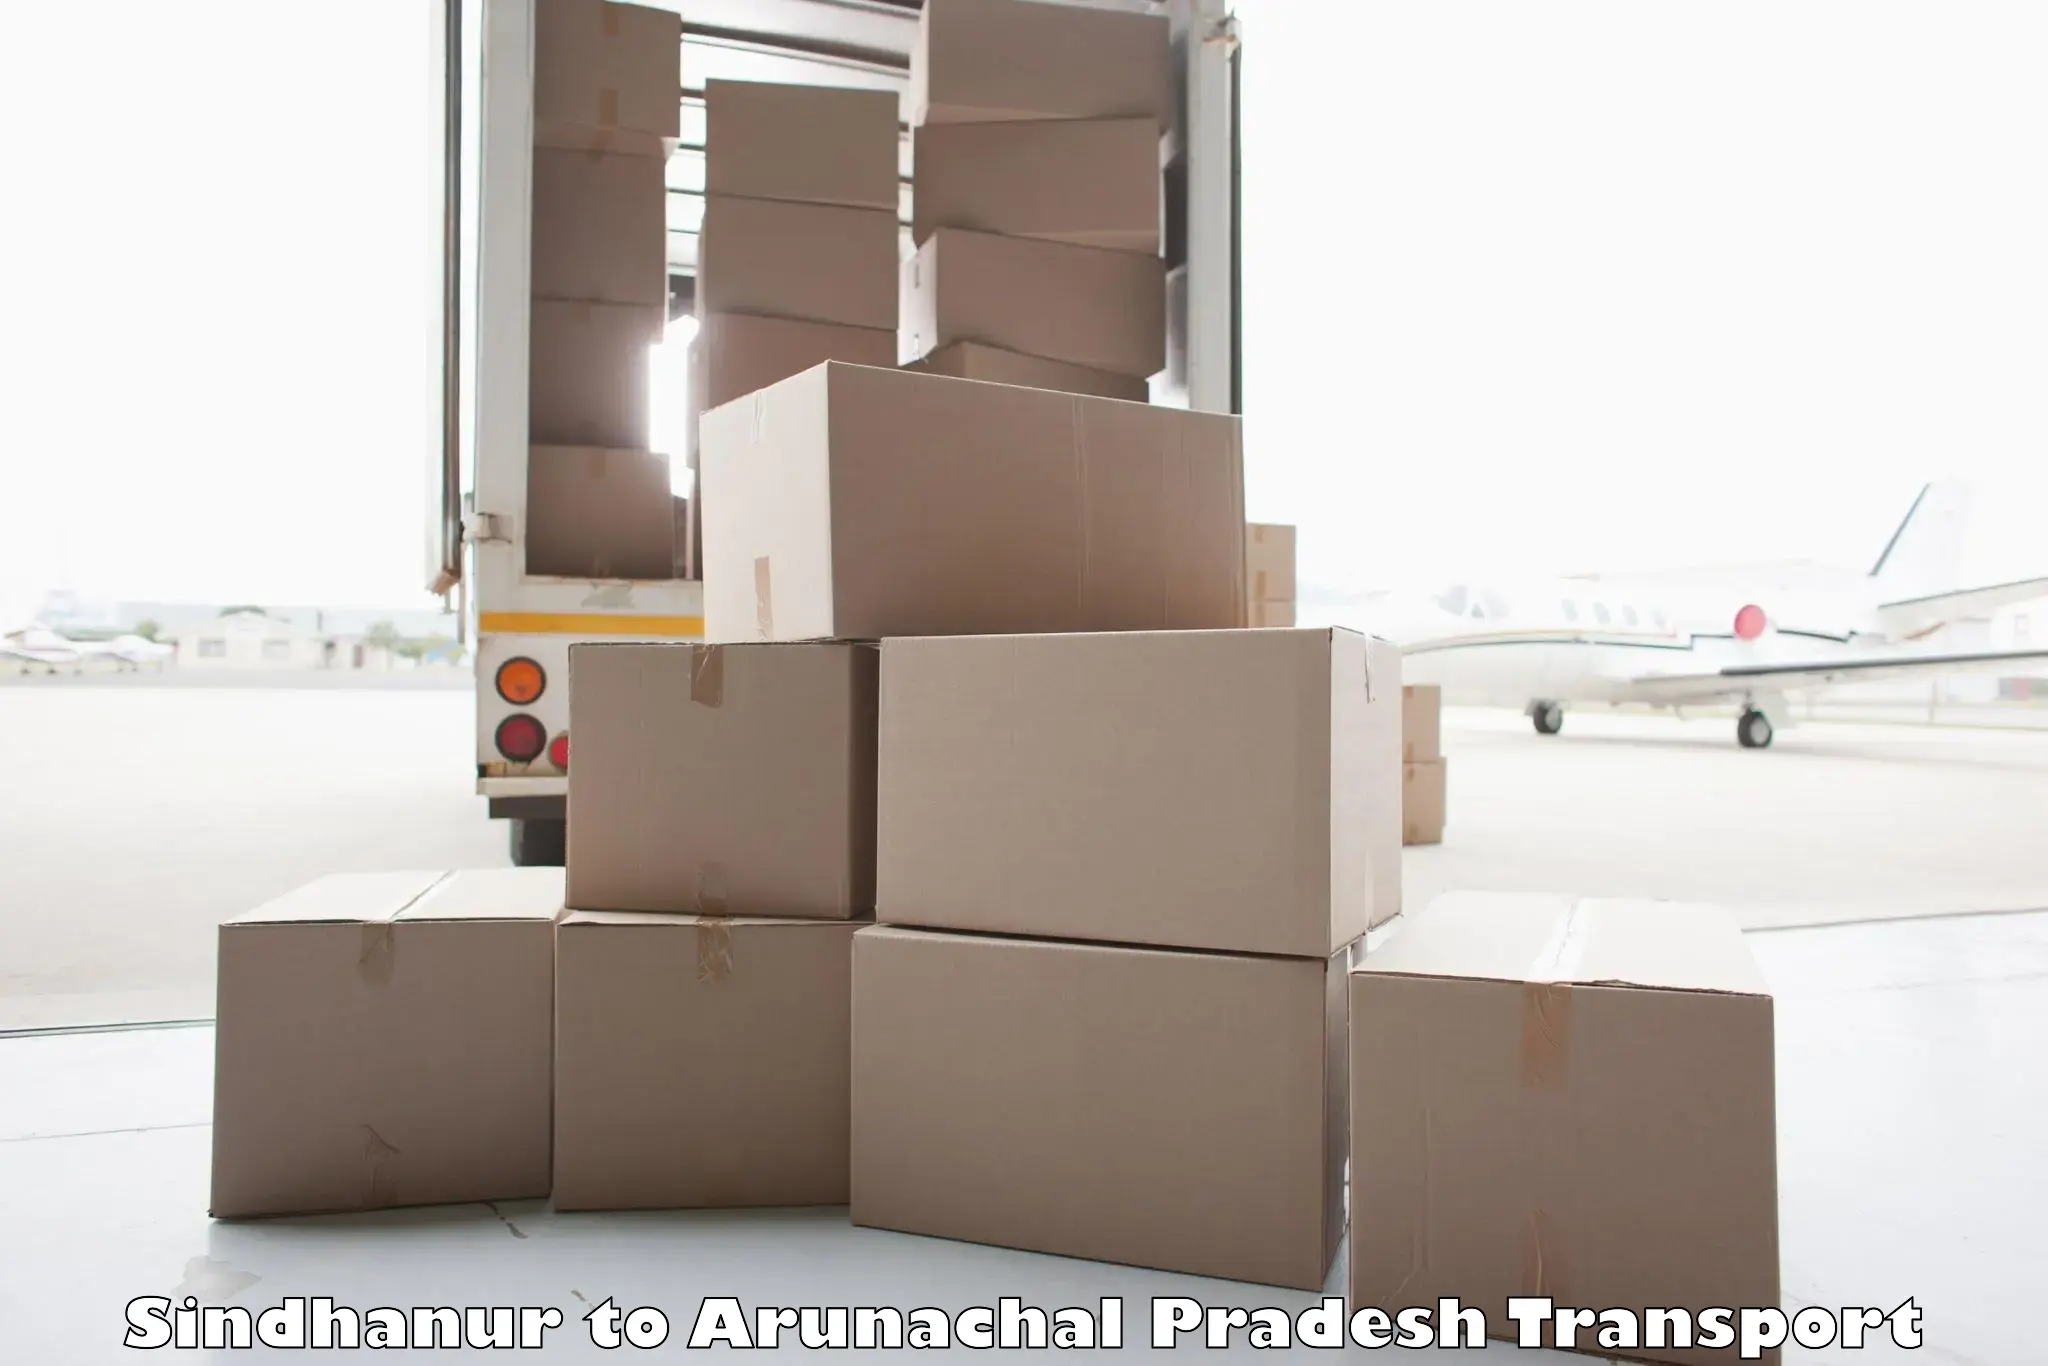 Transport shared services Sindhanur to Arunachal Pradesh